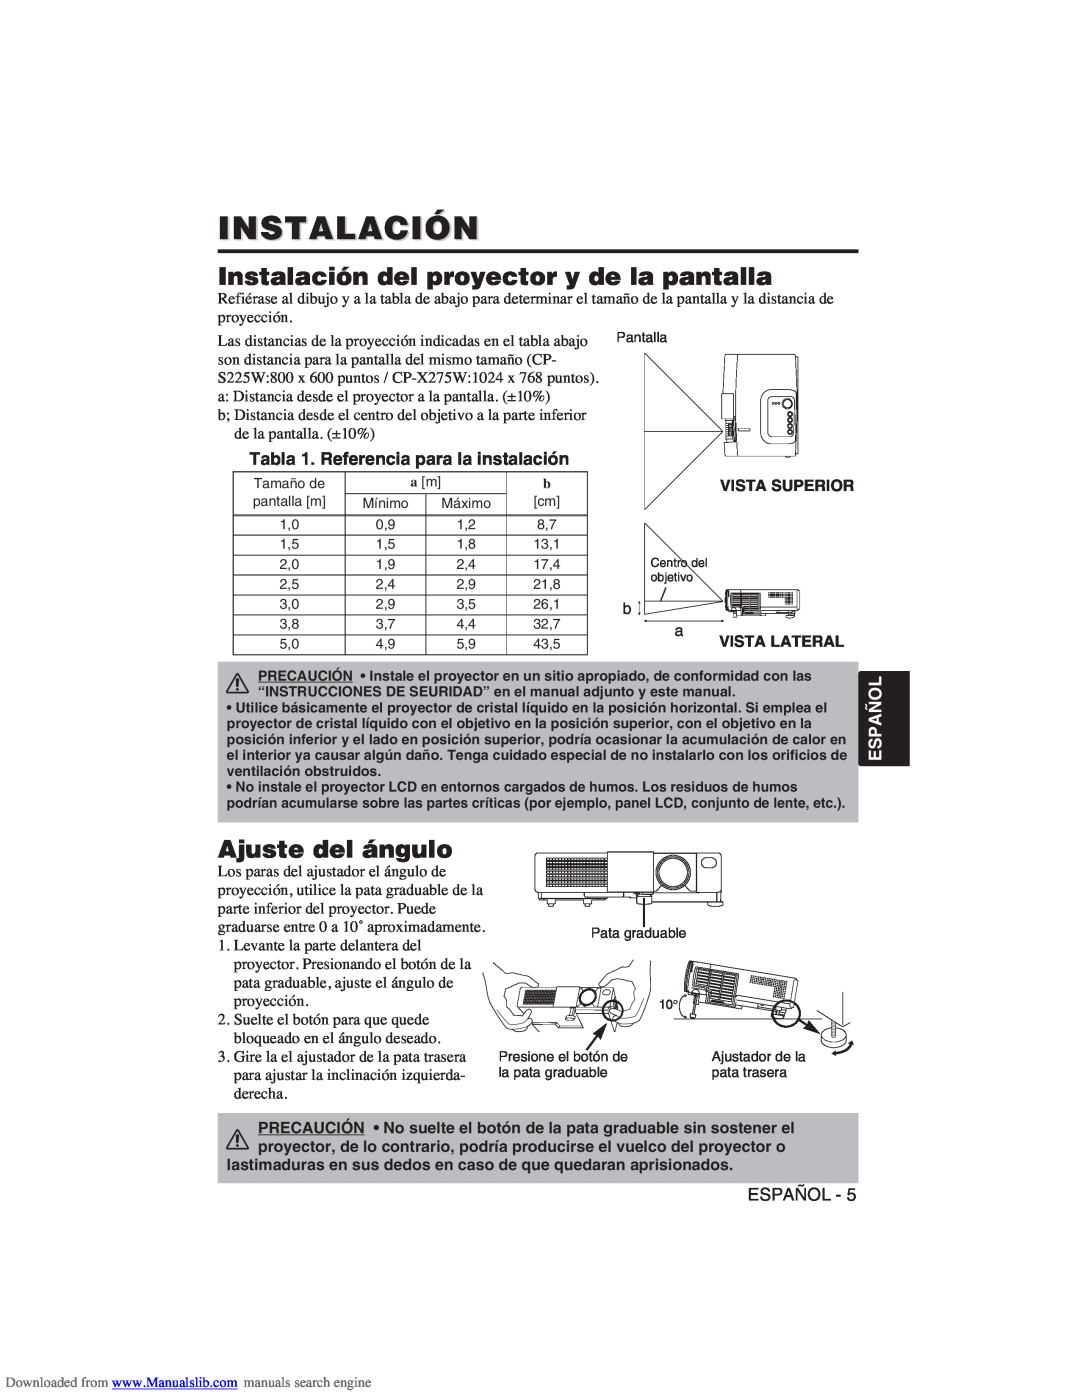 Hitachi CP-X275W user manual Instalación del proyector y de la pantalla, Ajuste del ángulo, Español 